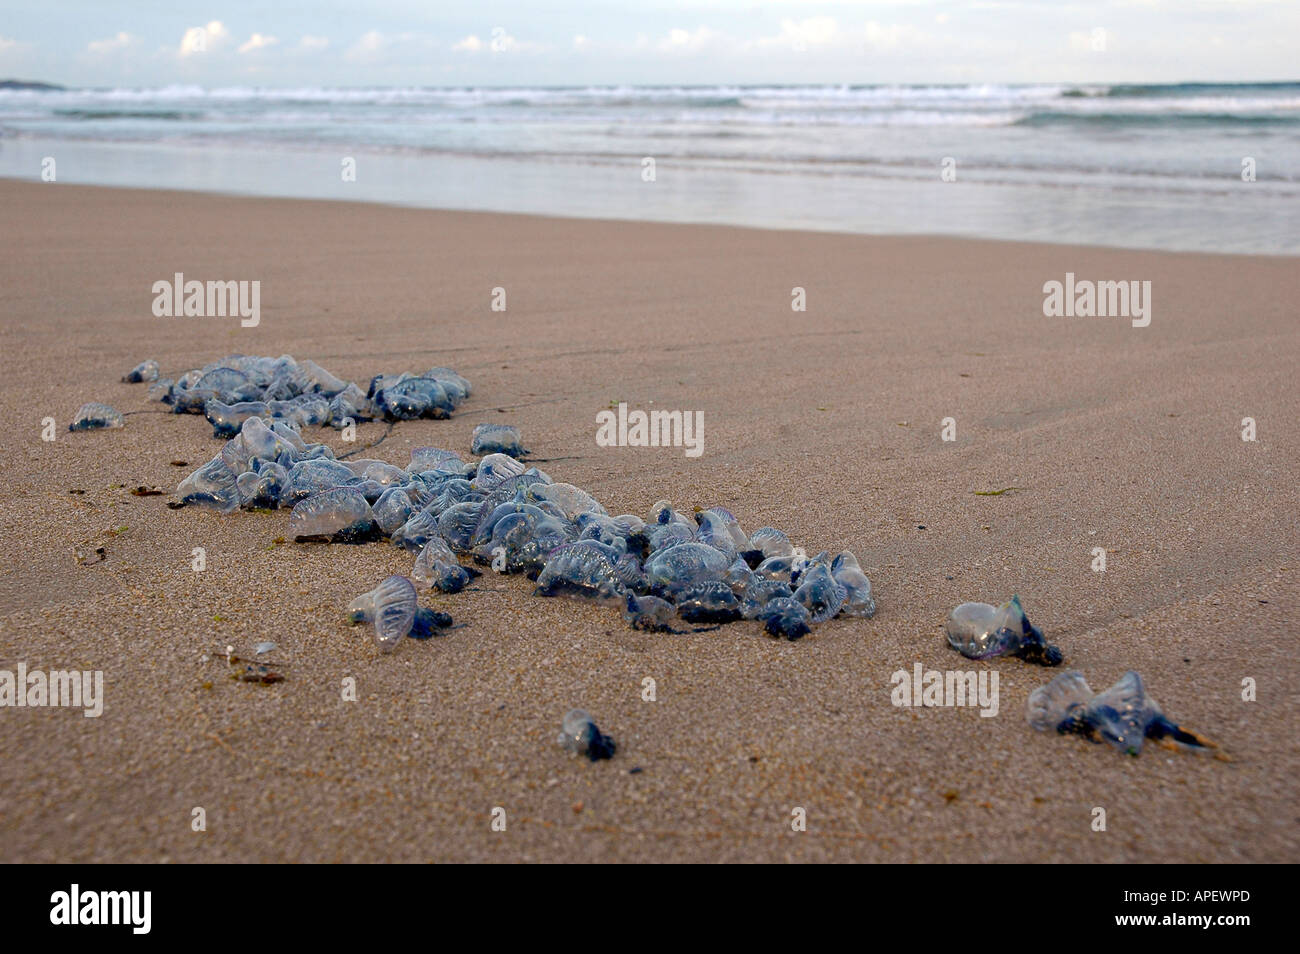 Eine große Anzahl von Zusammenarbeit Quallen gestrandet an einem Strand mit dem Meer im Hintergrund, Sydney, Australien. Stockfoto